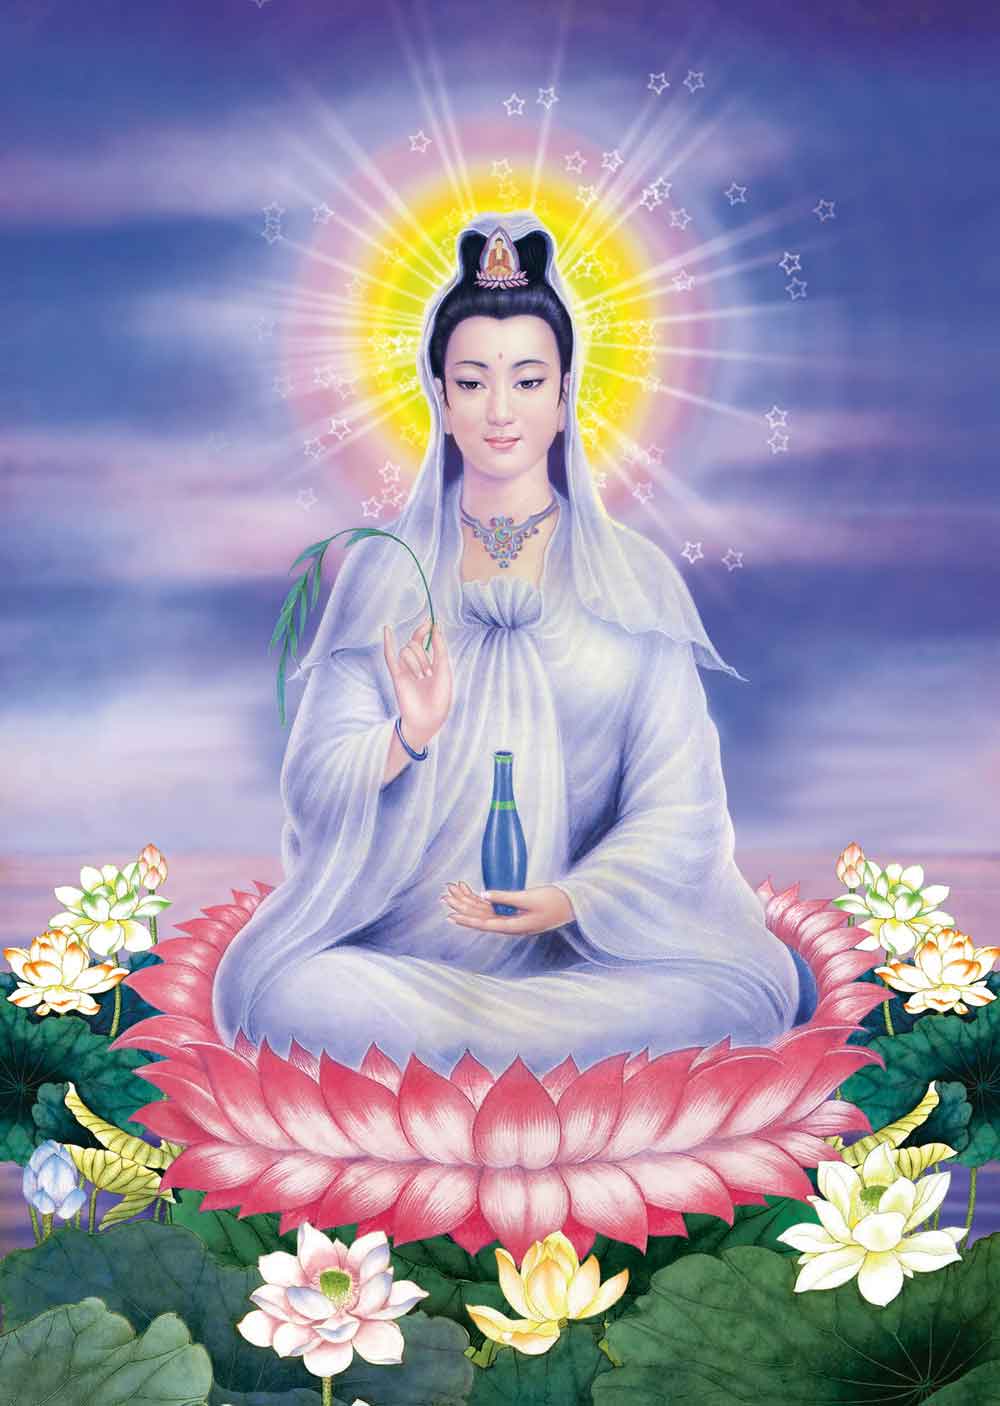 Hình Phật] Hình ảnh Phật chất lượng cao - ✫ Ảnh đẹp ✫